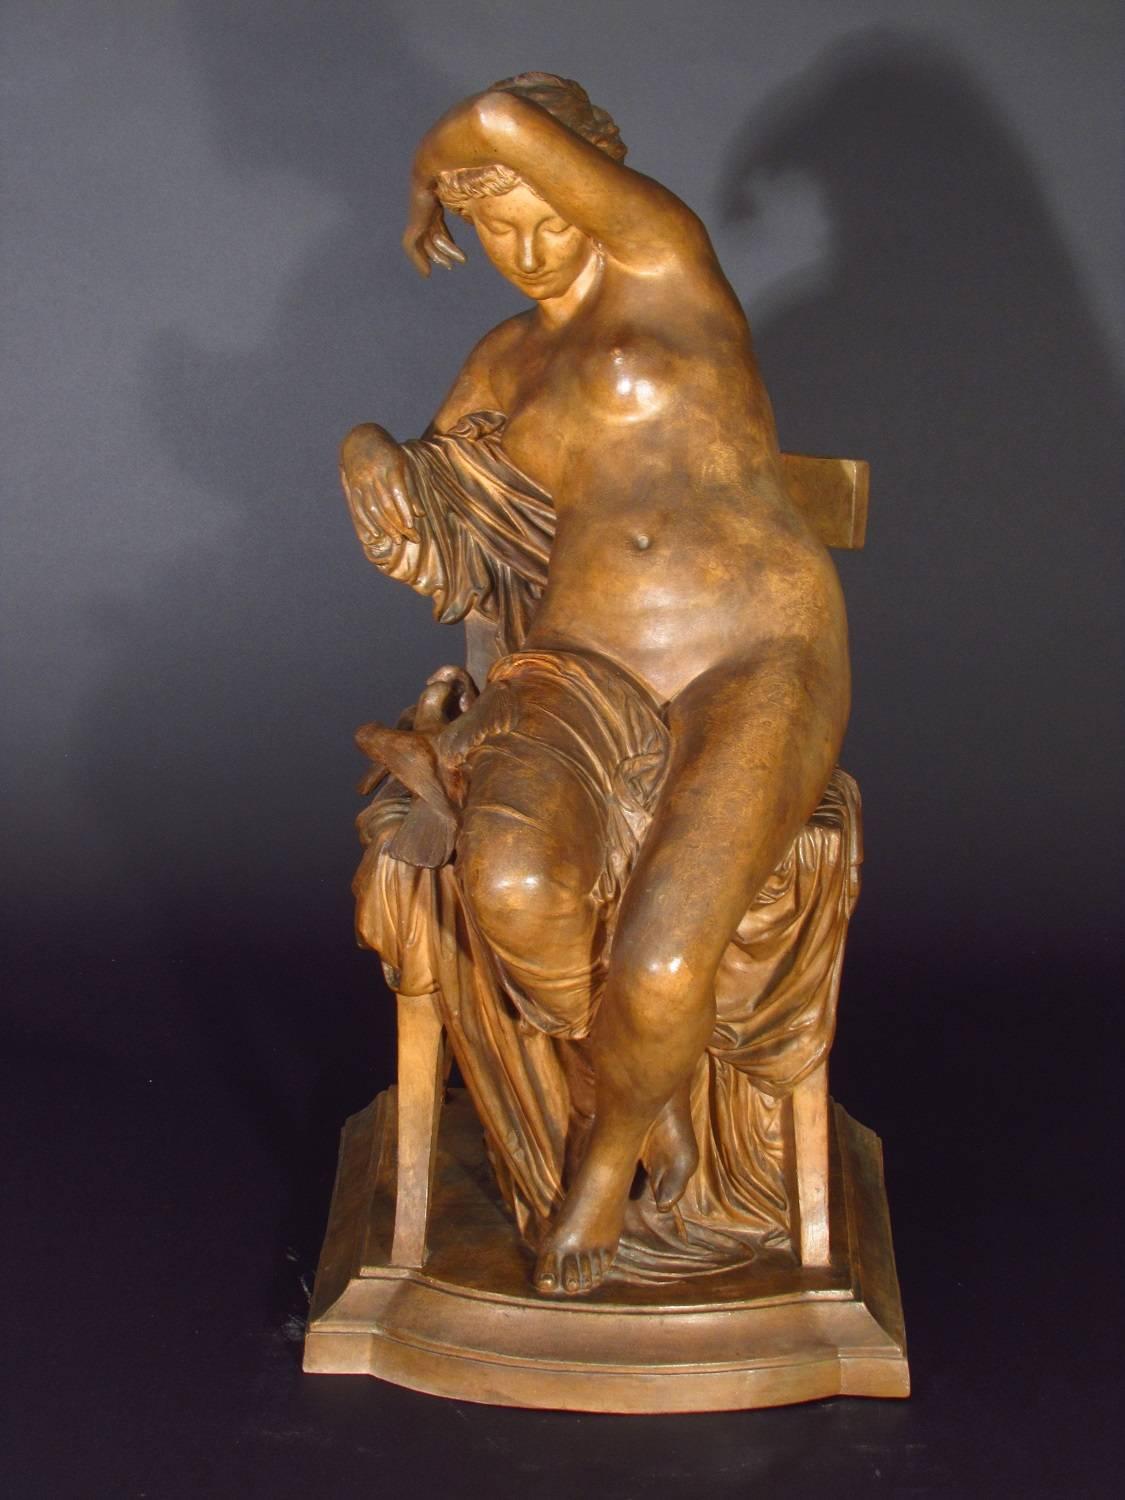 Awakening - Brown Nude Sculpture by Jules Franceschi